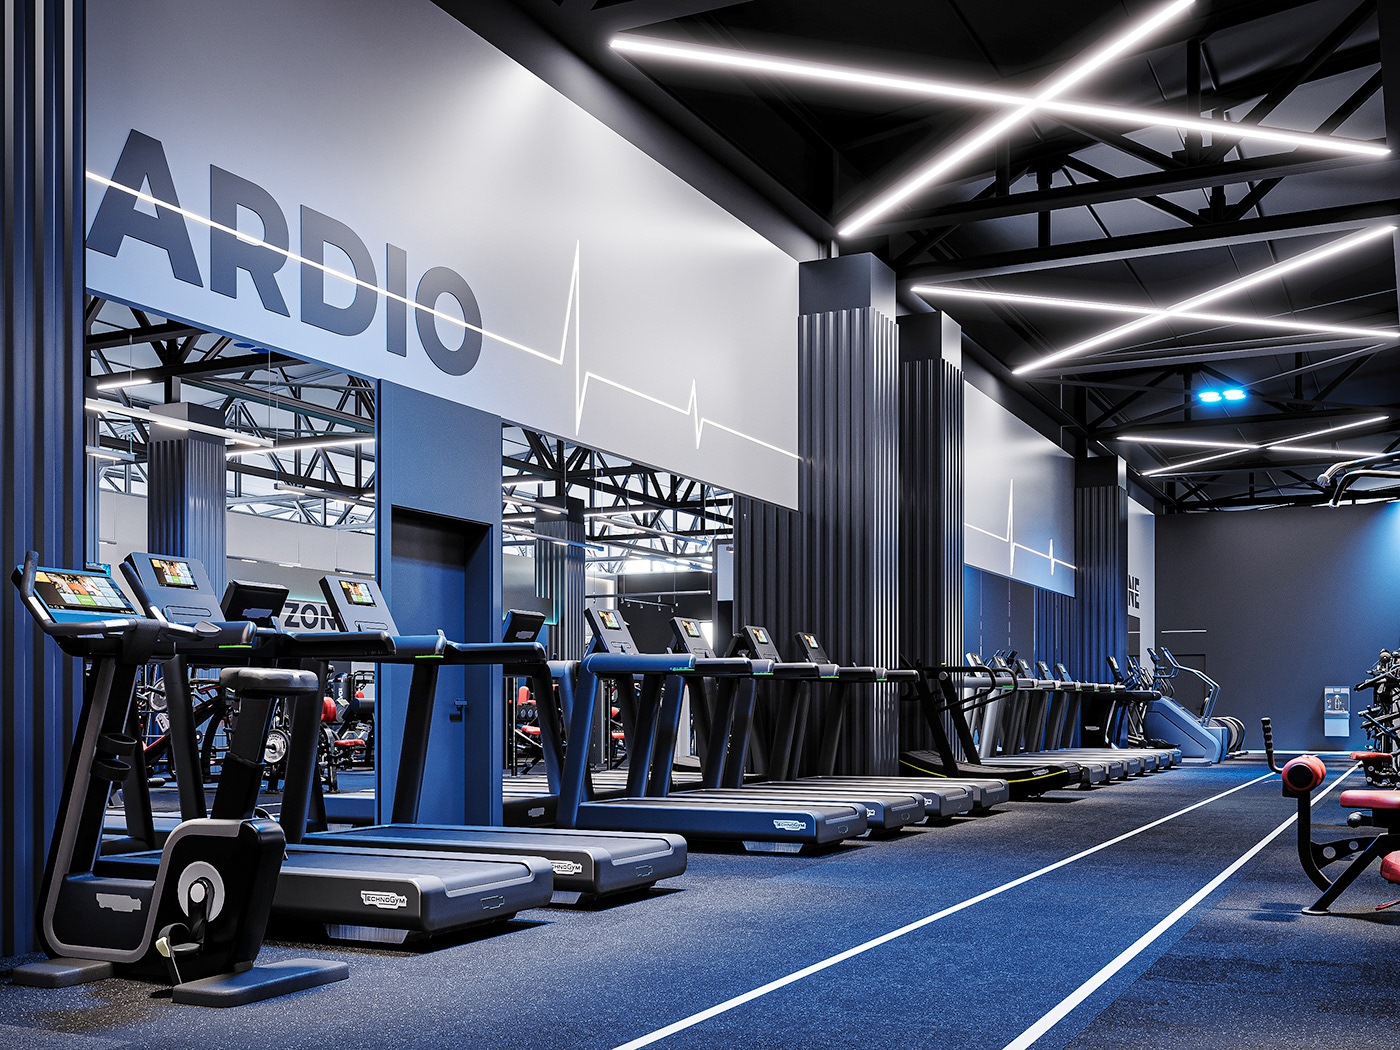 cardio design fintess interior fitness gym gym design gym interior interior design 